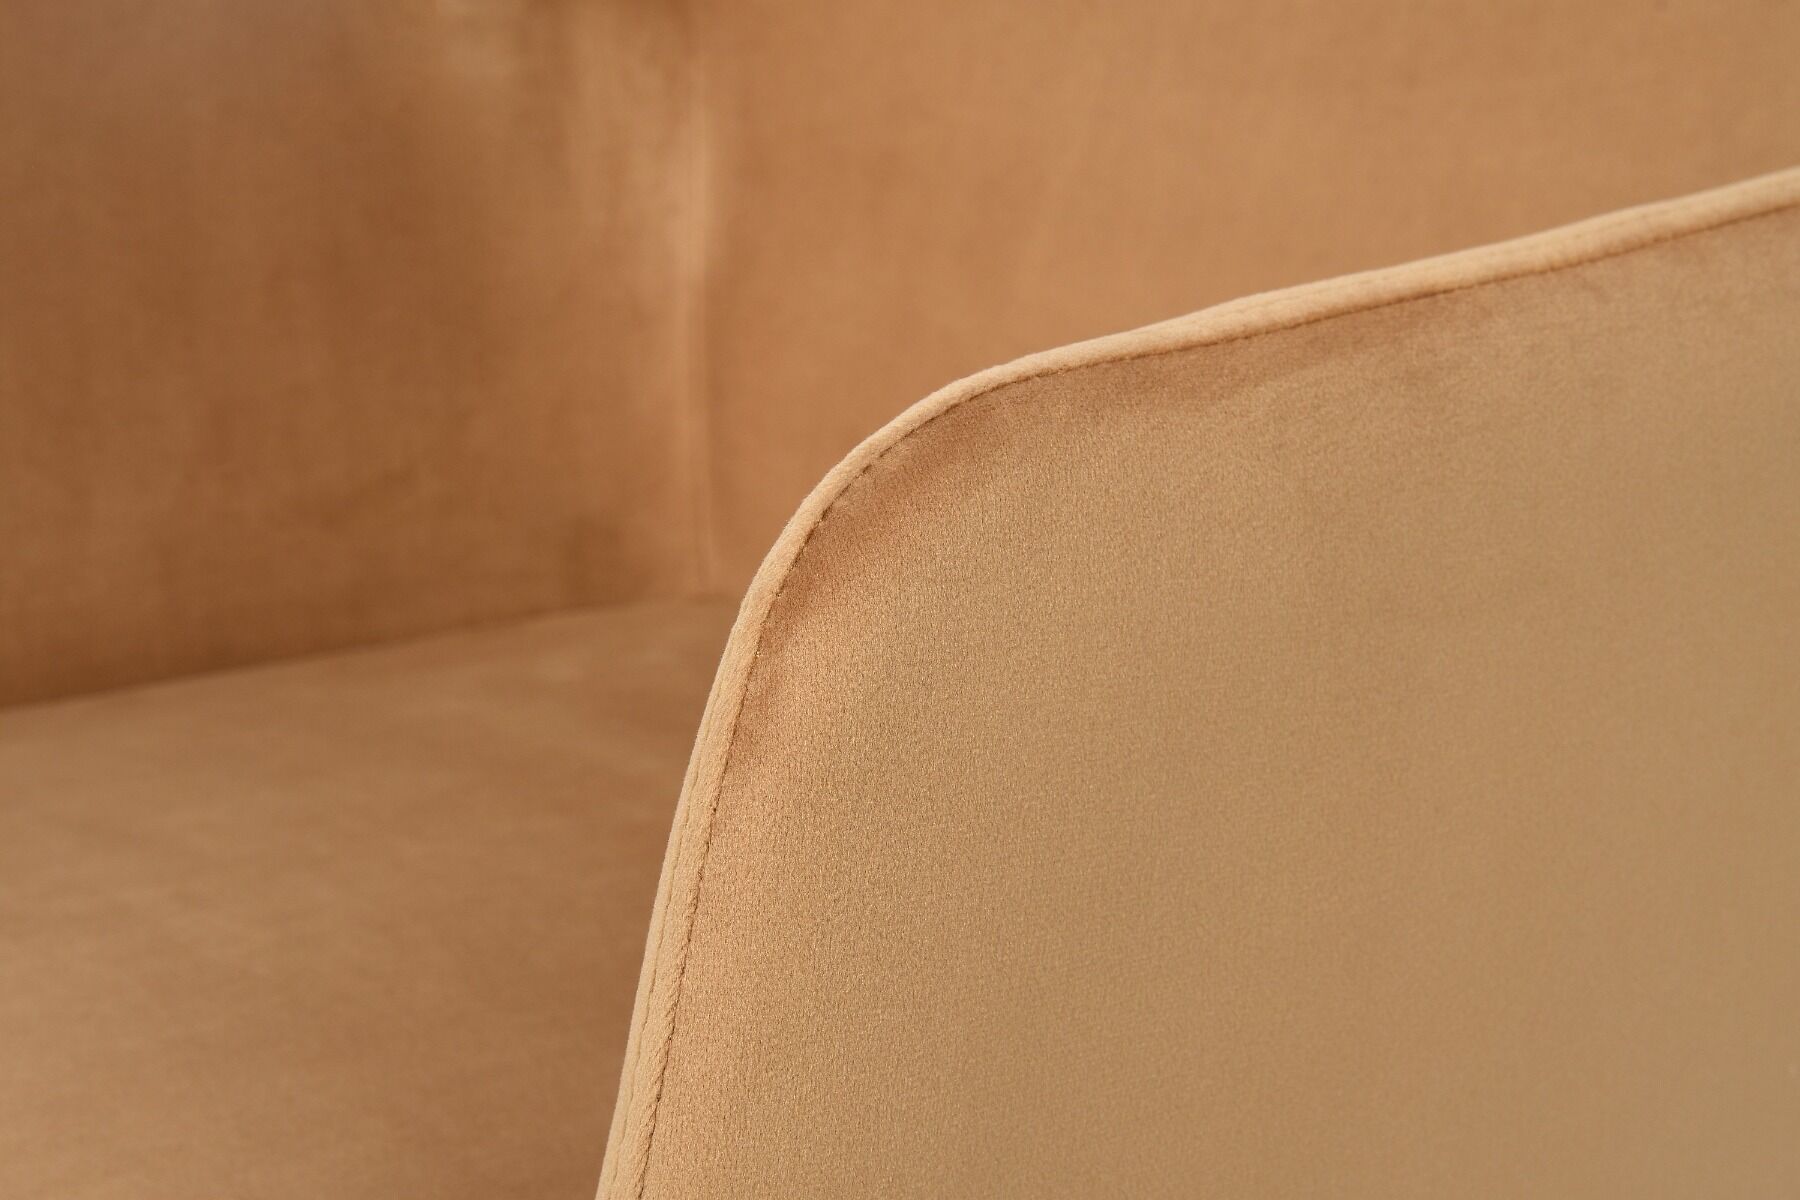 Krzesło Quadrato 56x63x89 cm musztardowy